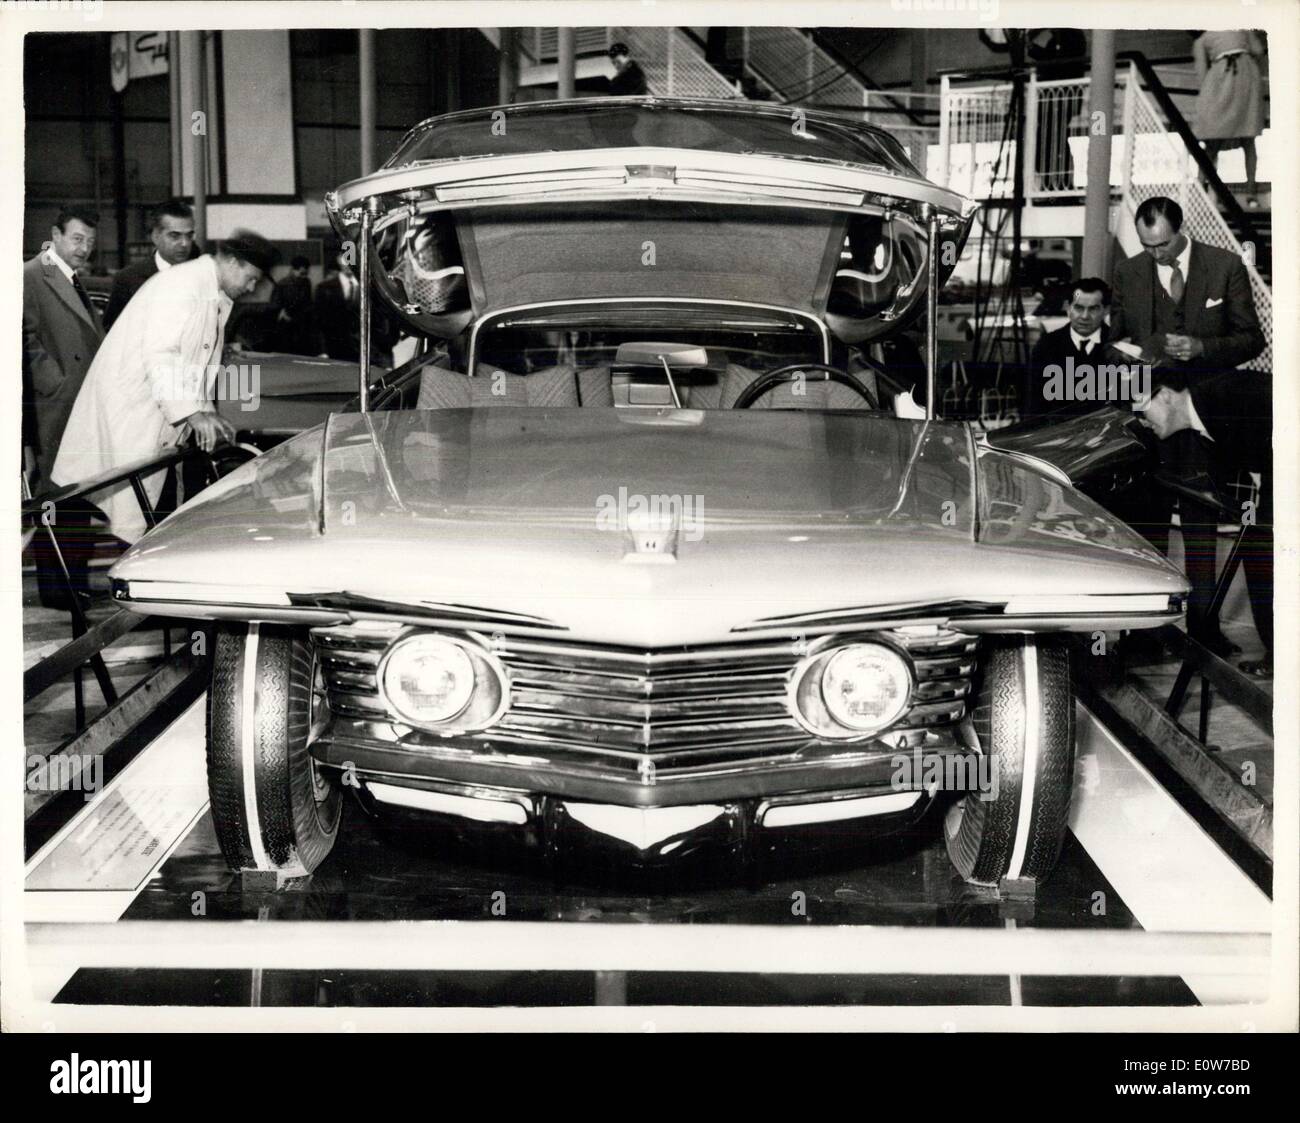 17 octobre 1961 - Motor Show ouvre à Earl's Court - Le Salon de l'automobile a ouvert ses portes ce matin à Earl's Court, Londres - Photo montre :- la nouvelle Chrysler voiture Turbine sur Show..Cal en le «la plupart des voitures modernes au show' Banque D'Images